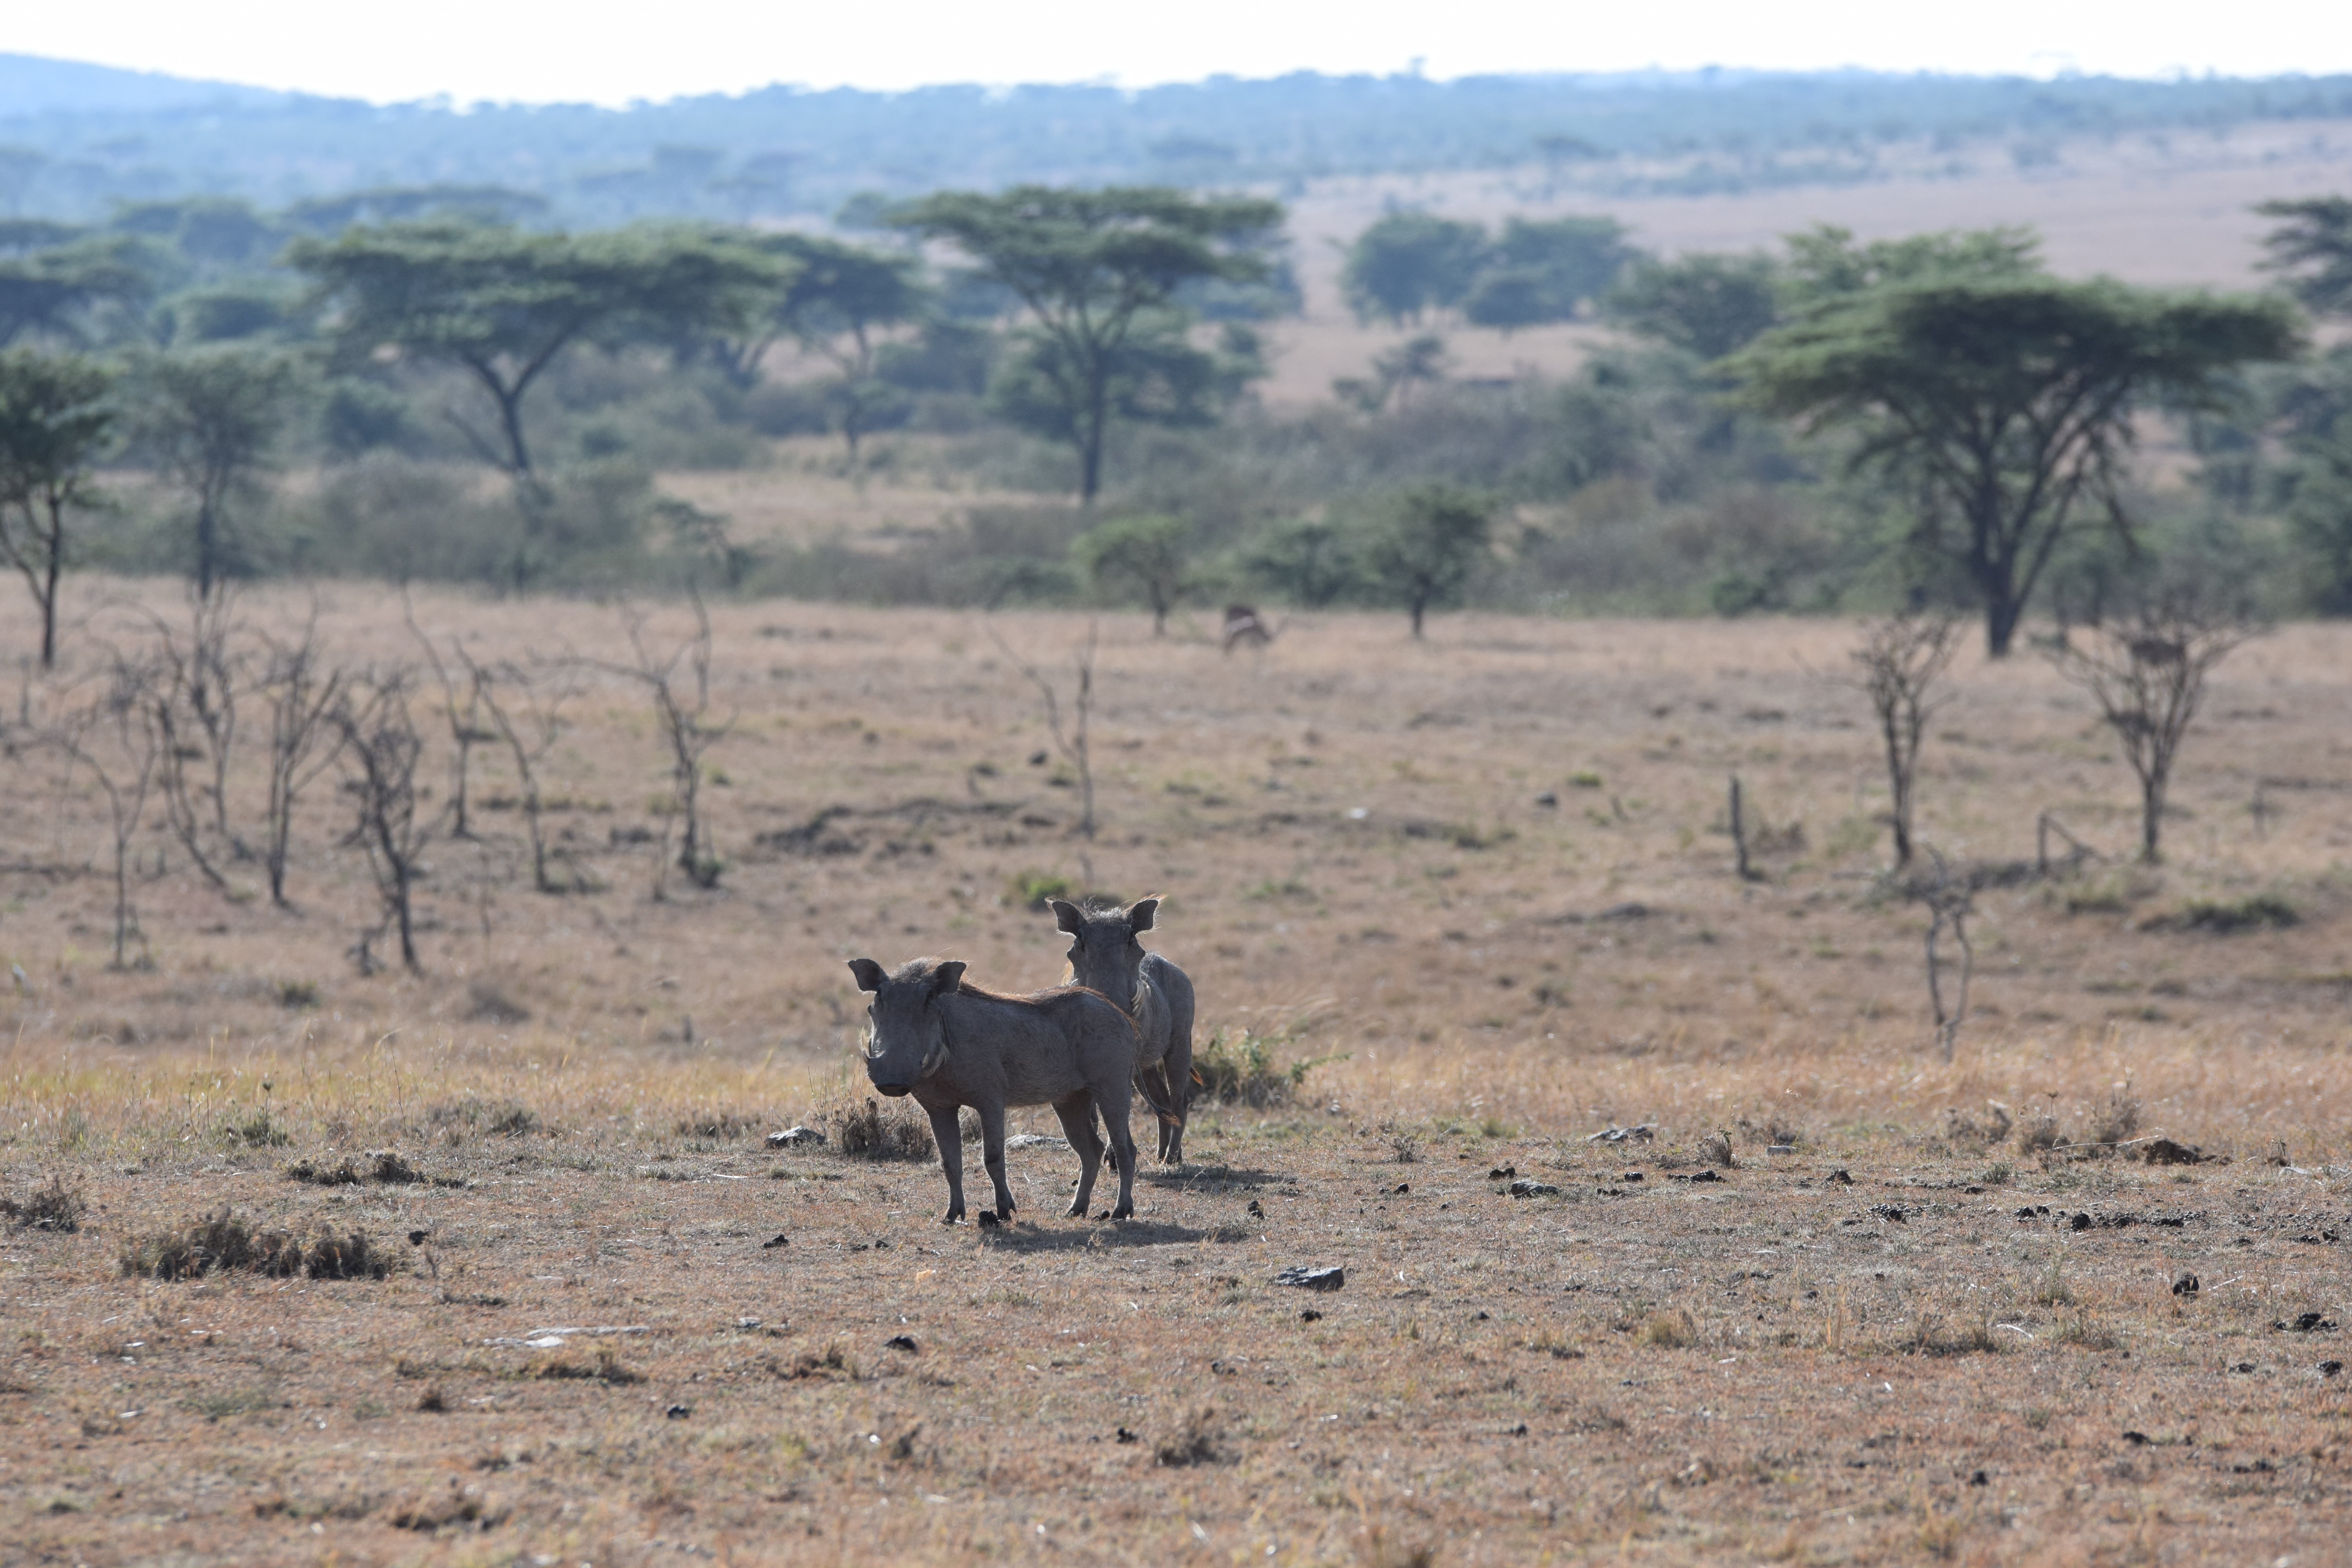 Our Stay At Sir Richard Branson's Mahali Mzuri In Maasai Mara, Kenya -- Kenya Safari - Kenya Safari Tours - Safari Kenya - Safari Trips In Kenya - Trip To Kenya - Kenyan Safari - How To Plan A Safari - Kenya Safari Guide - Kenya Wildlife - Kenya Trip - Travel To Kenya - Guide To Kenya - Maasai Mara